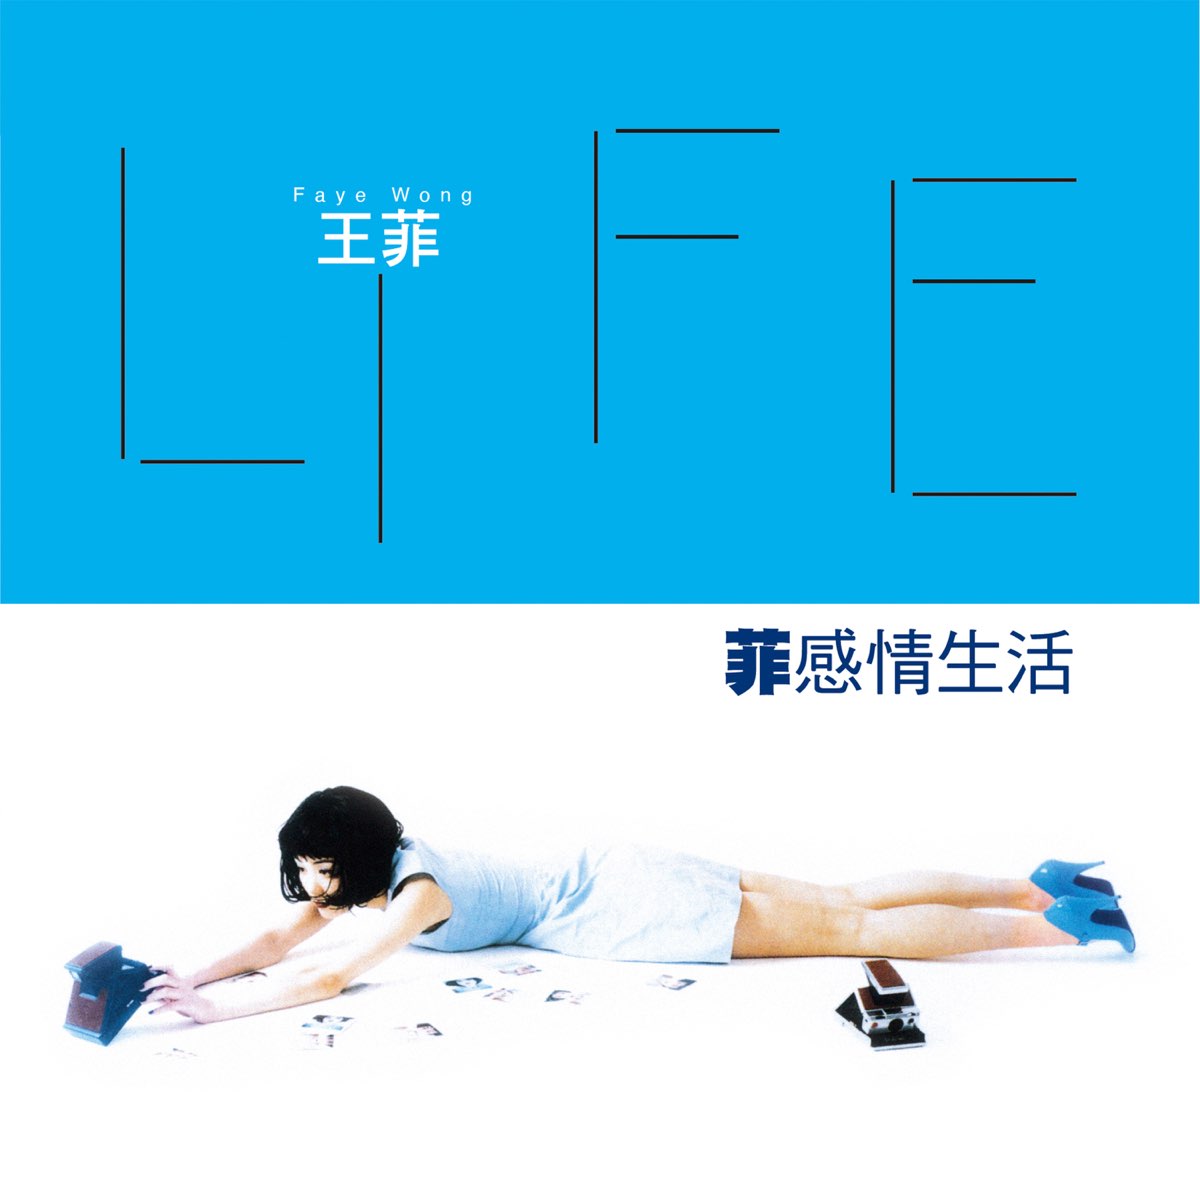 ‎《菲感情生活》- 王菲的专辑 - Apple Music